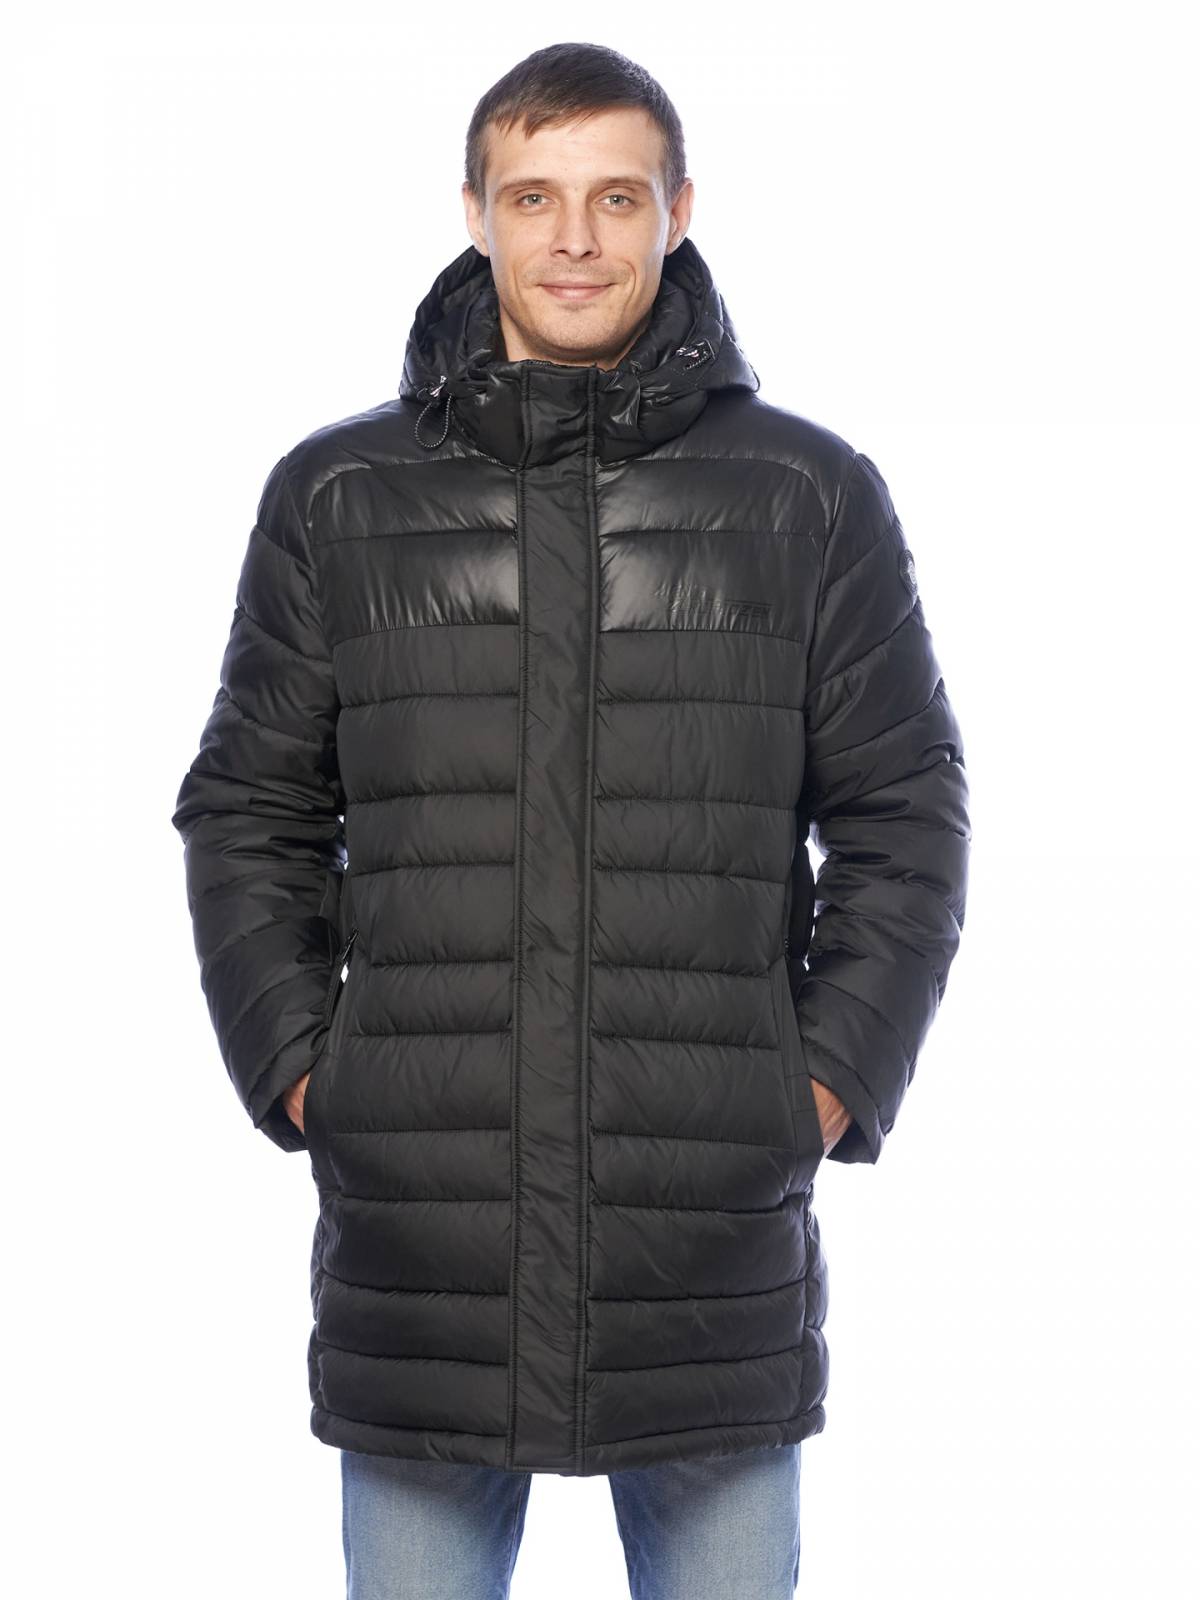 Зимняя куртка мужская Zero Frozen 4205 черная 48 RU